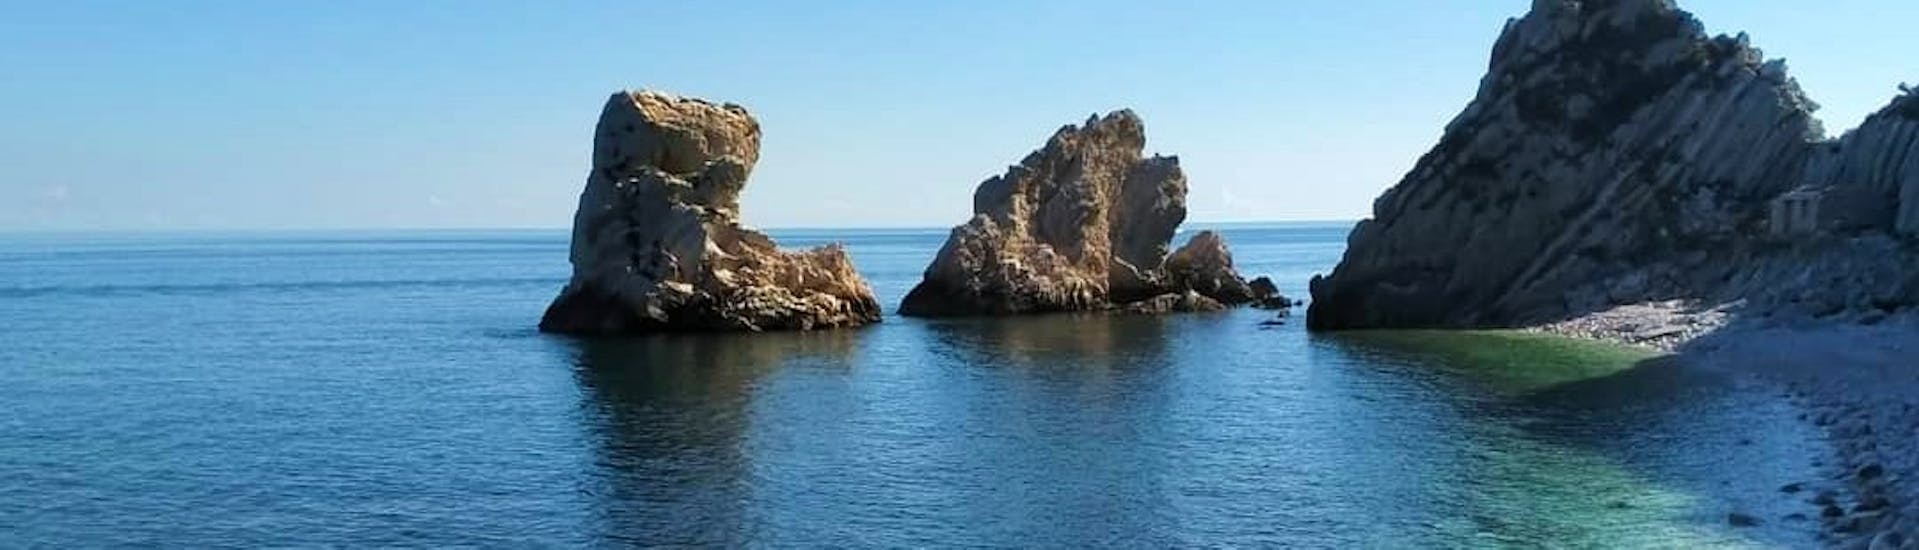 Privé boottocht van Numana naar Spiaggia del Frate met zwemmen & toeristische attracties.